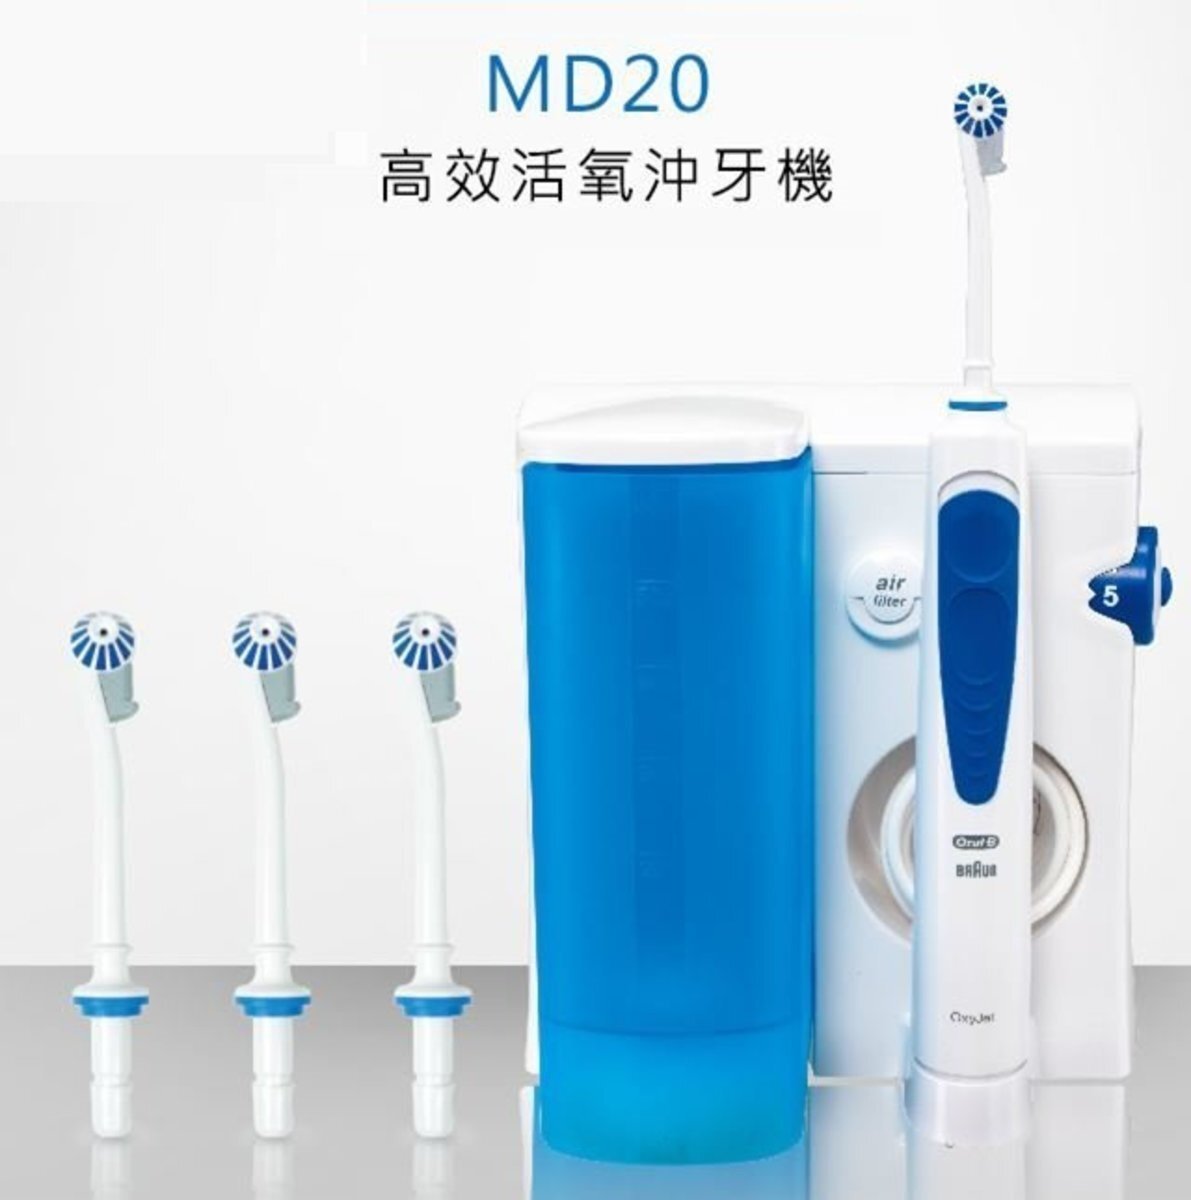 MD20 口腔潔淨器